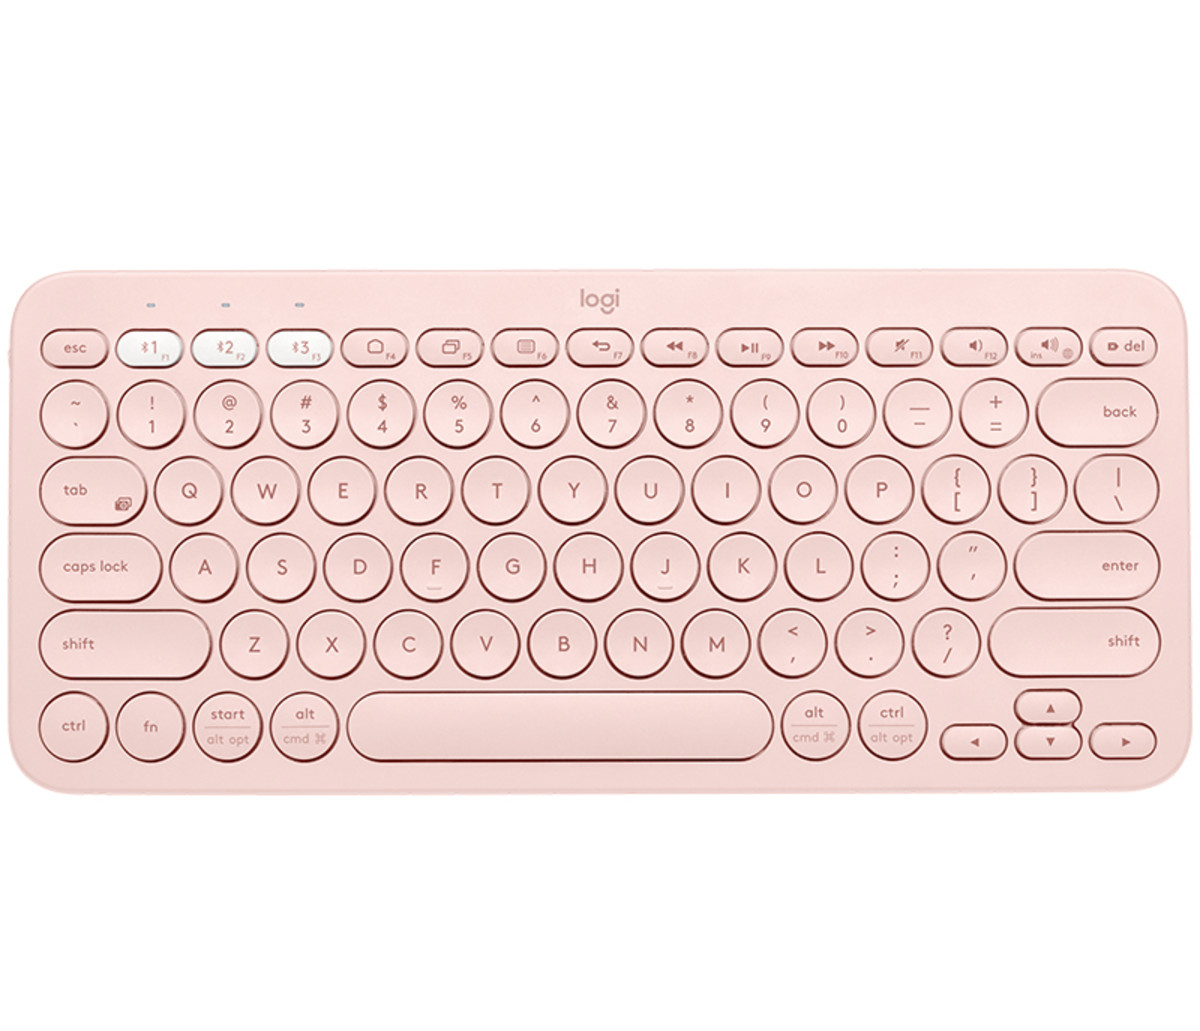 K380 BT Keyboard - Rose